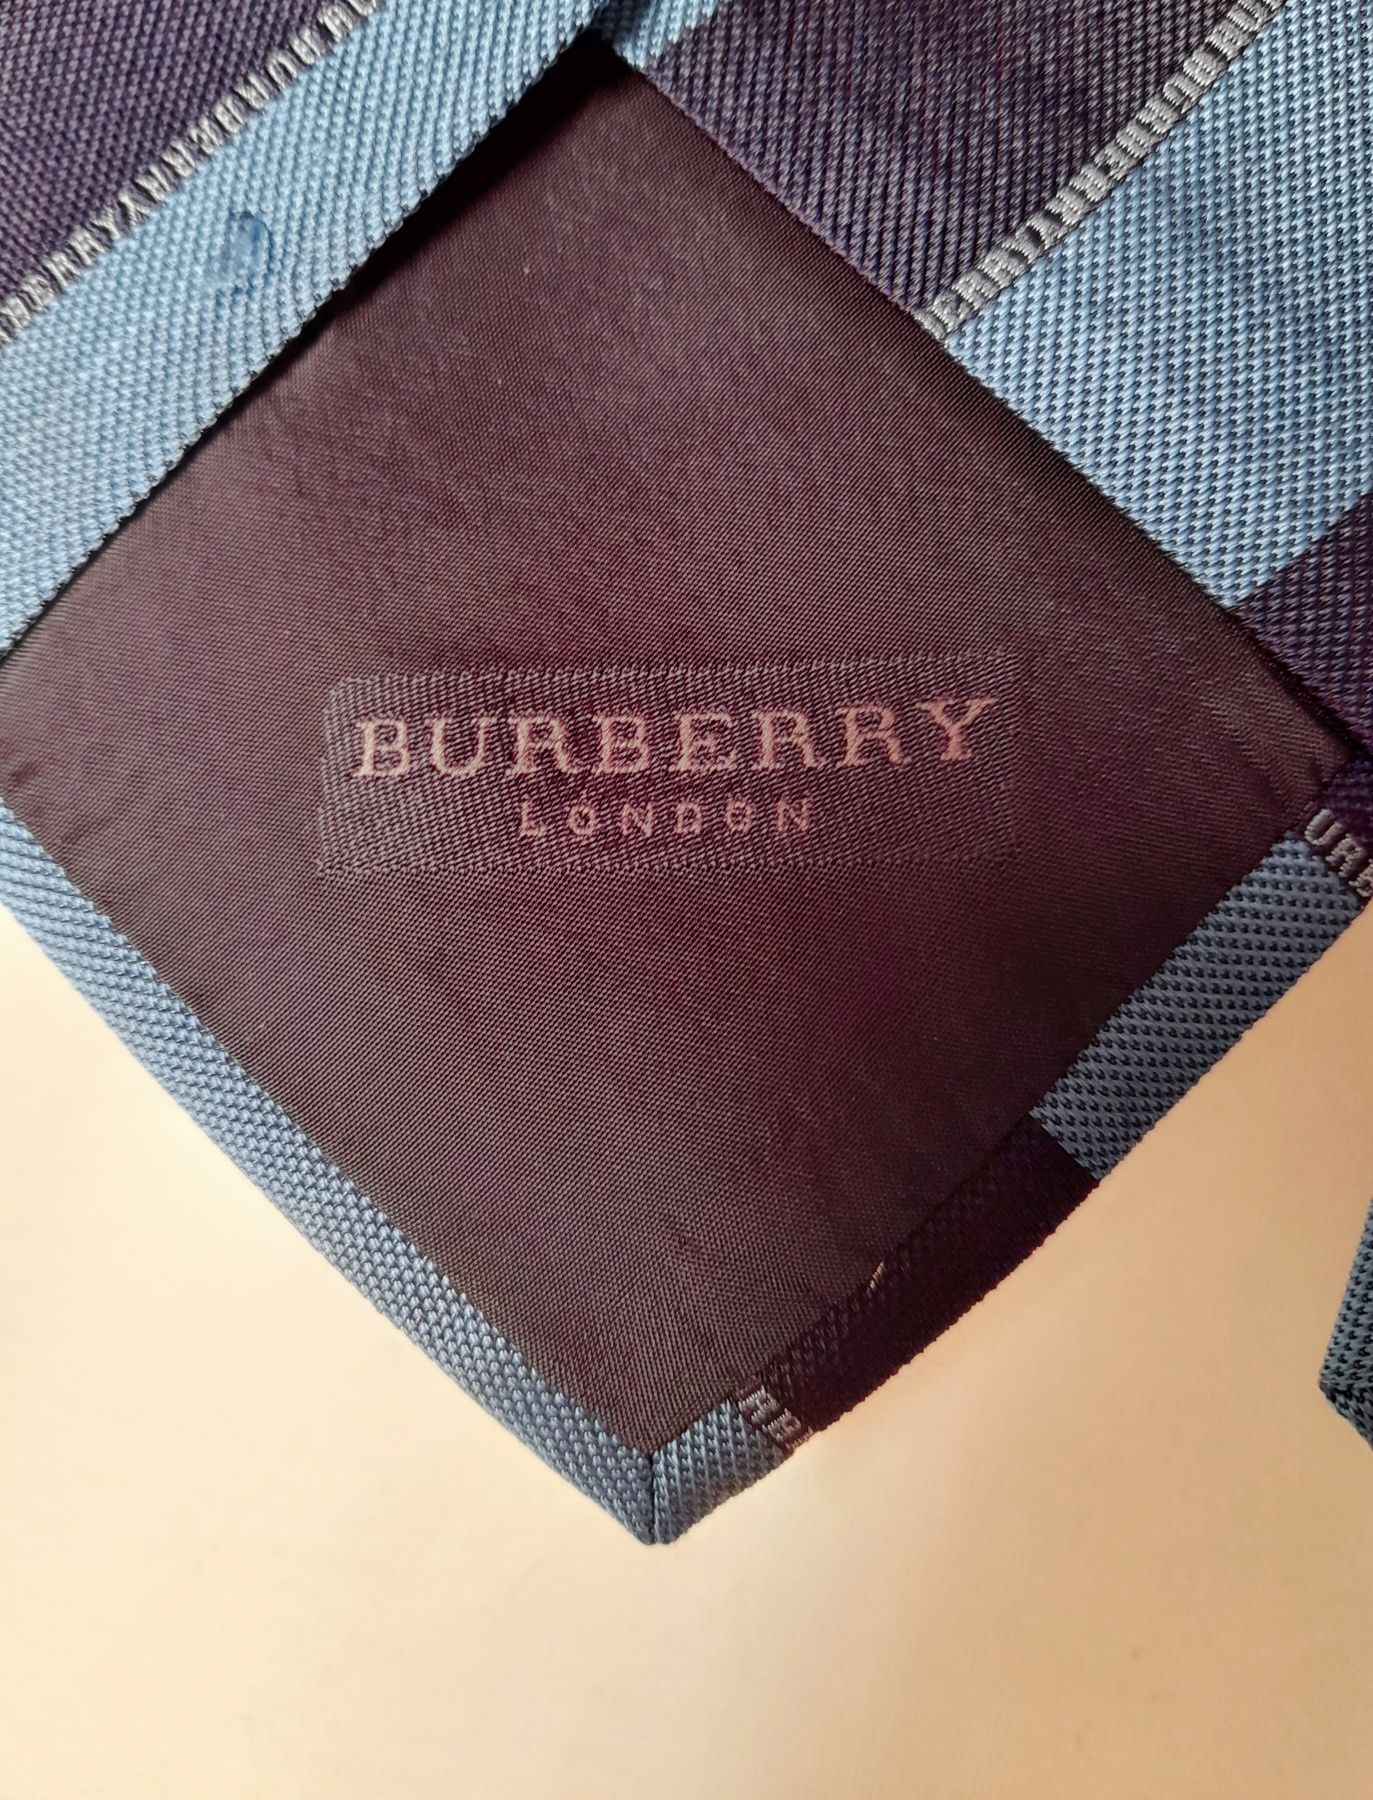 Gravata Burberry em seda, às riscas, em dois tons de azul.